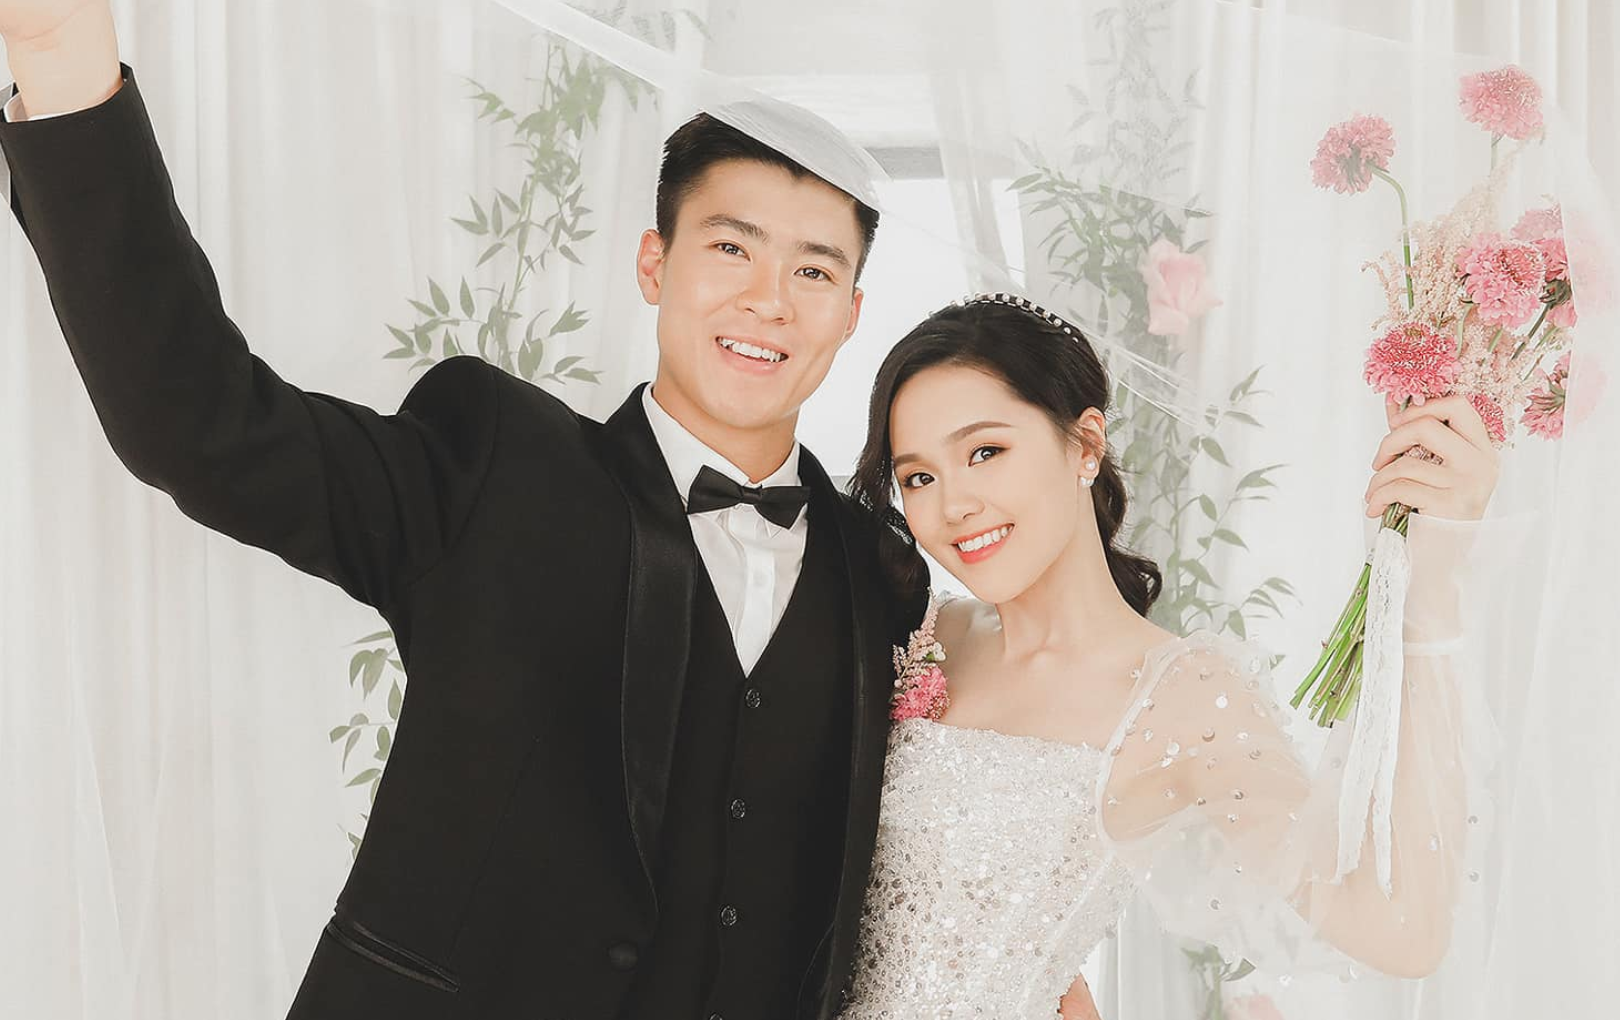 Duy Mạnh và Quỳnh Anh kết thúc chặng đường 5 năm hẹn hò bằng một đám cưới vào ngày 9/2/2020.